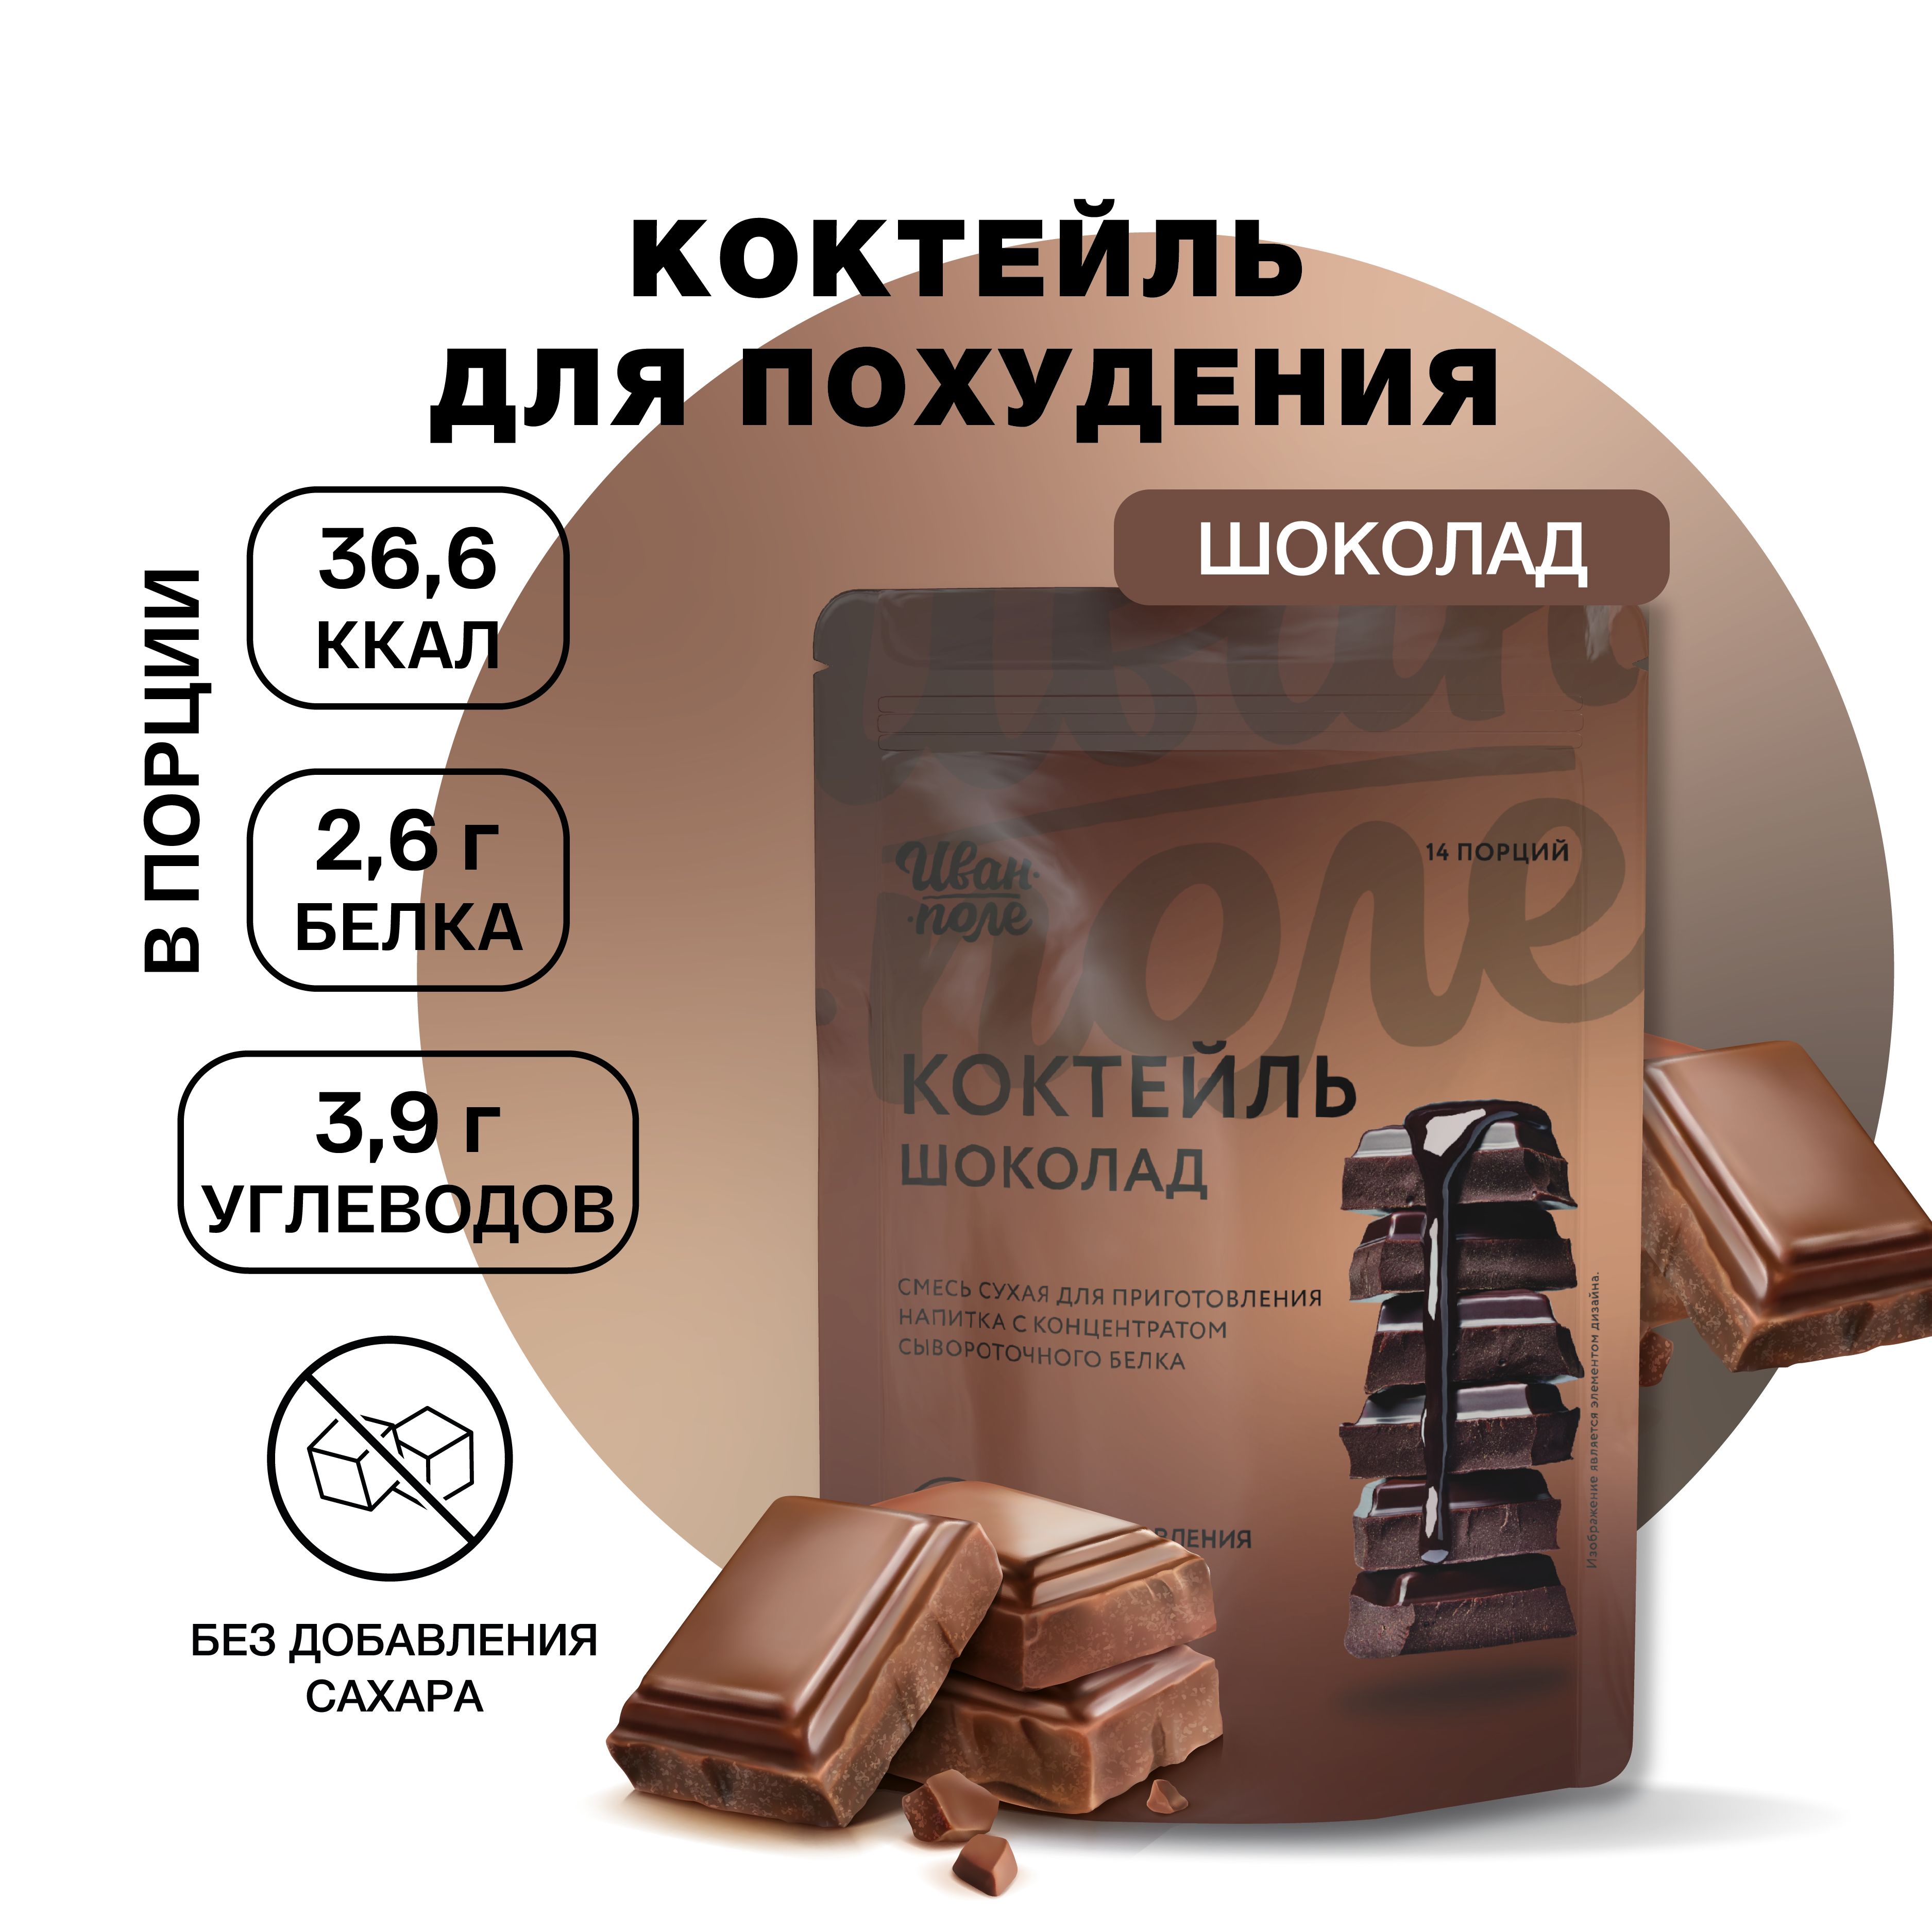 Коктейль молочный протеиновый Иван-поле Шоколад 210 г